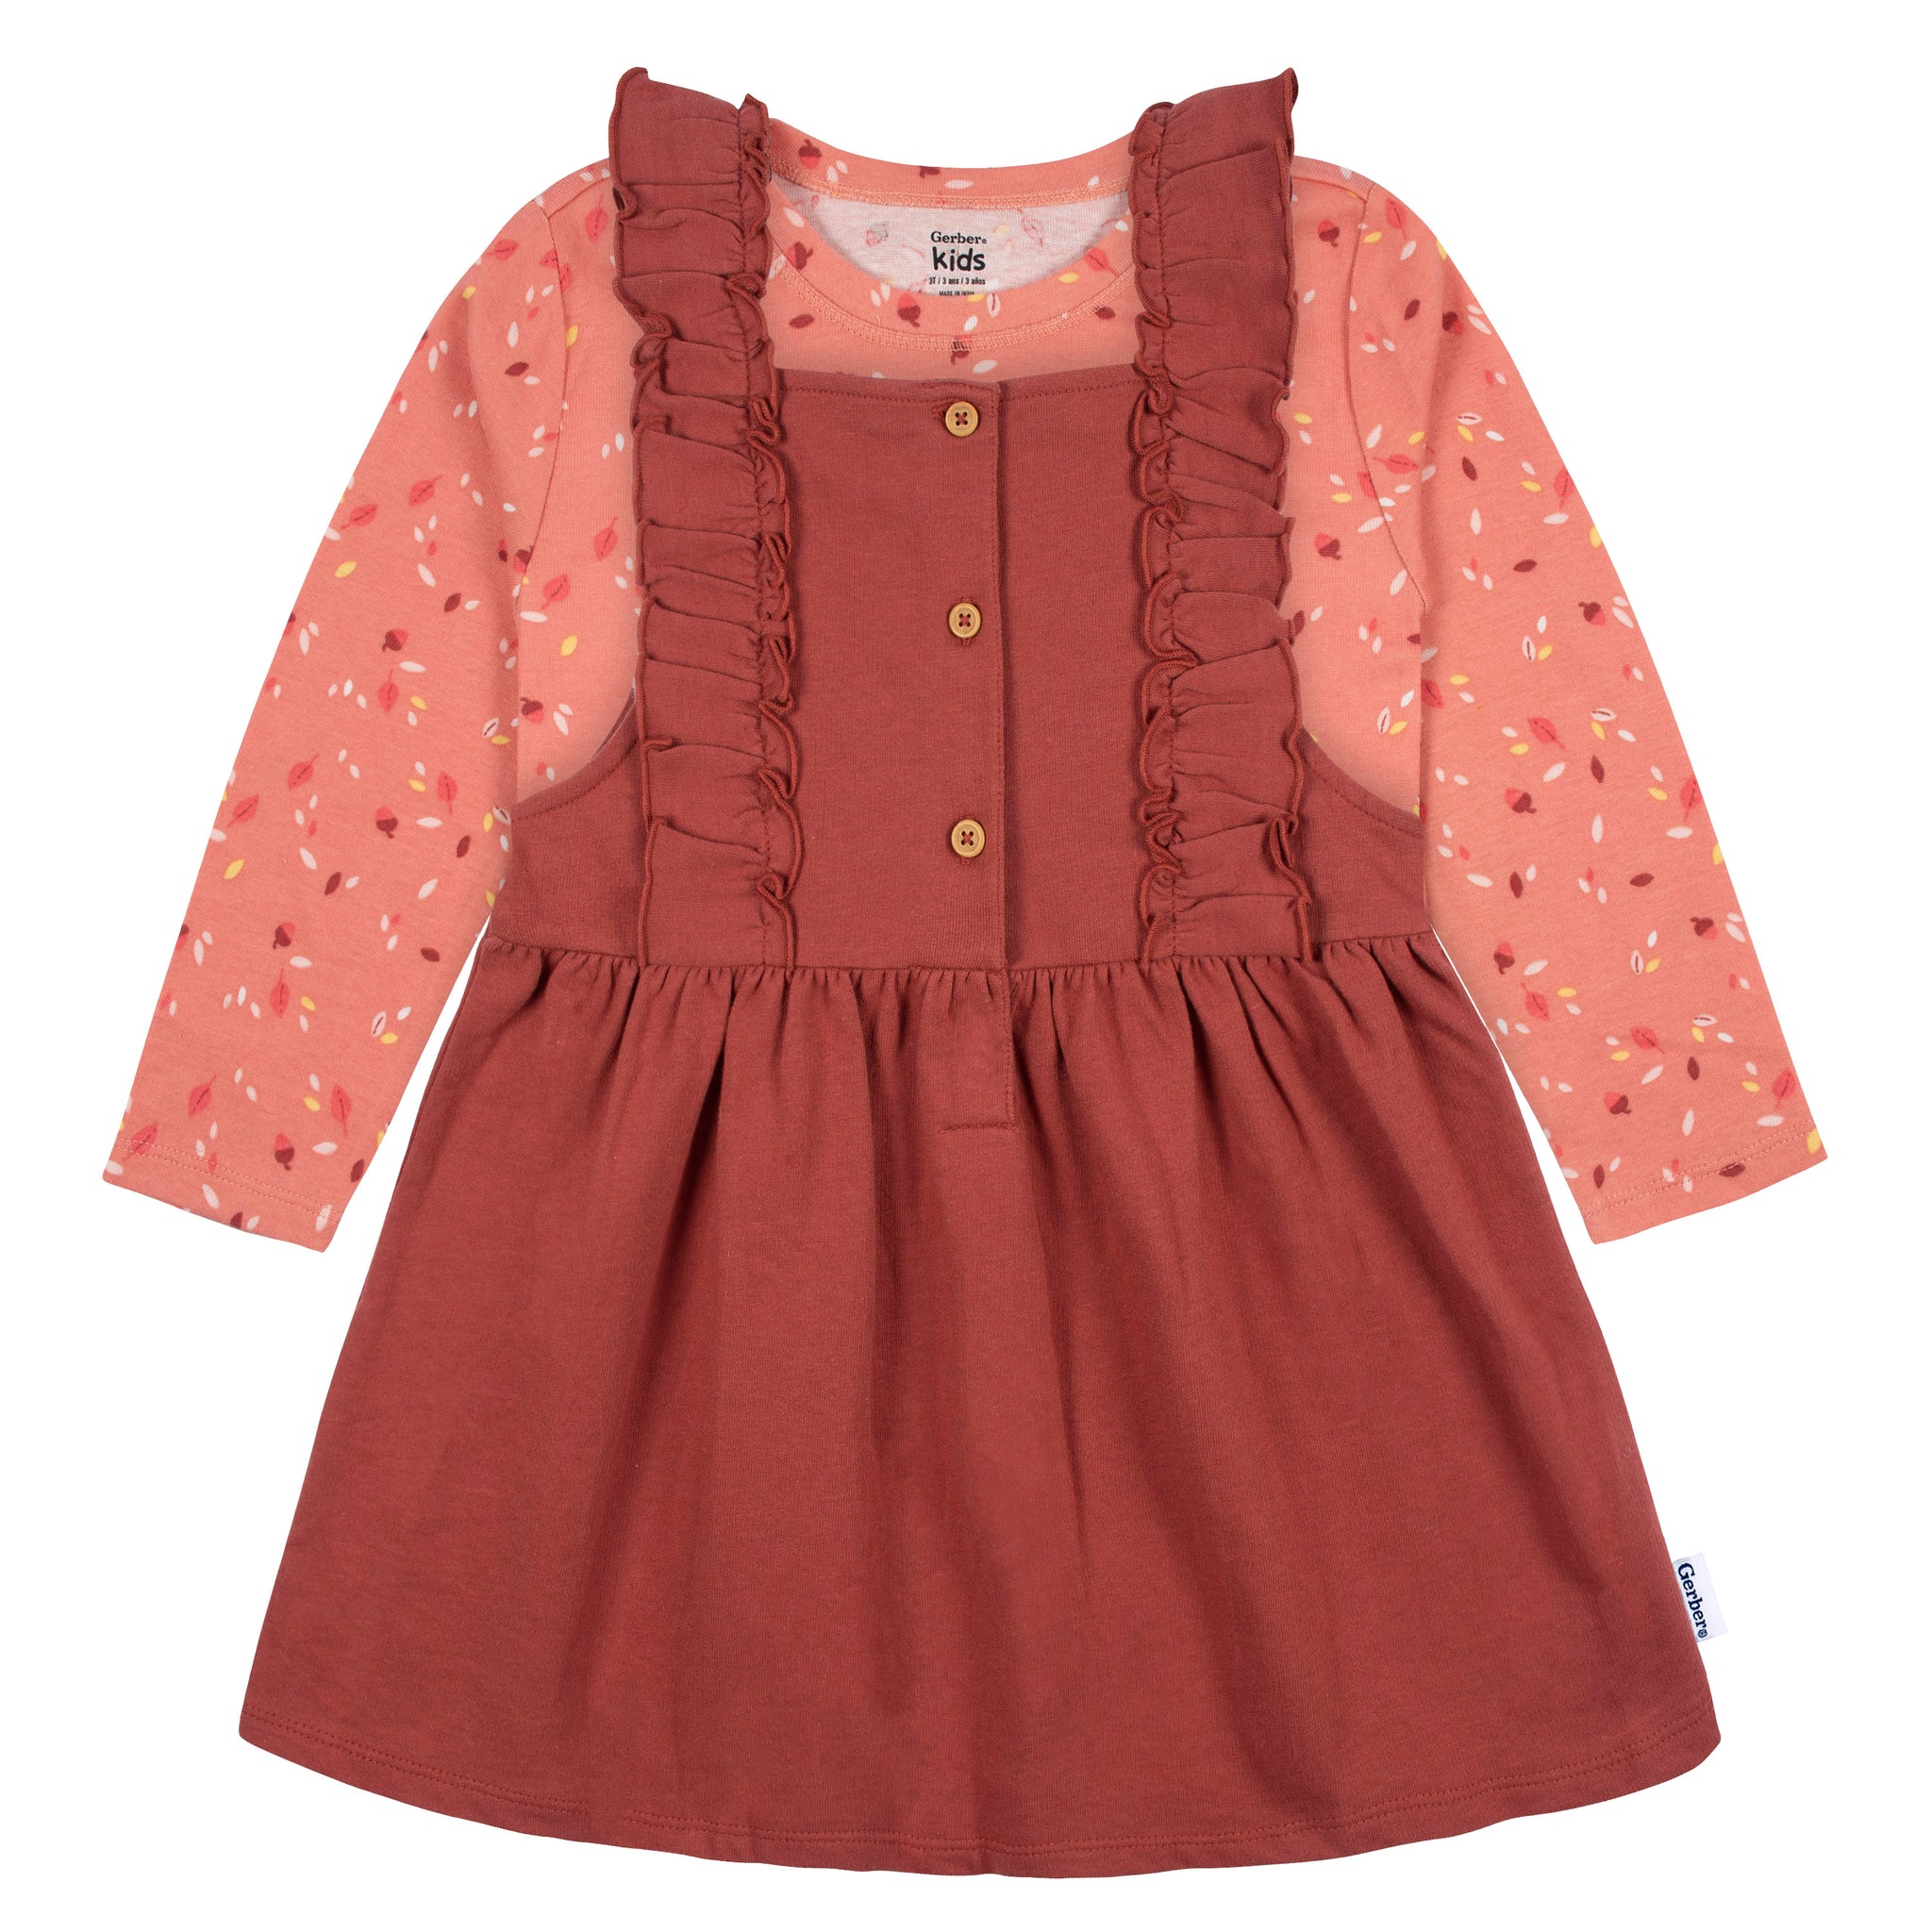 2-Piece Infant & Toddler Girls Orange Leaves Jumper & Top Set-Gerber Childrenswear Wholesale